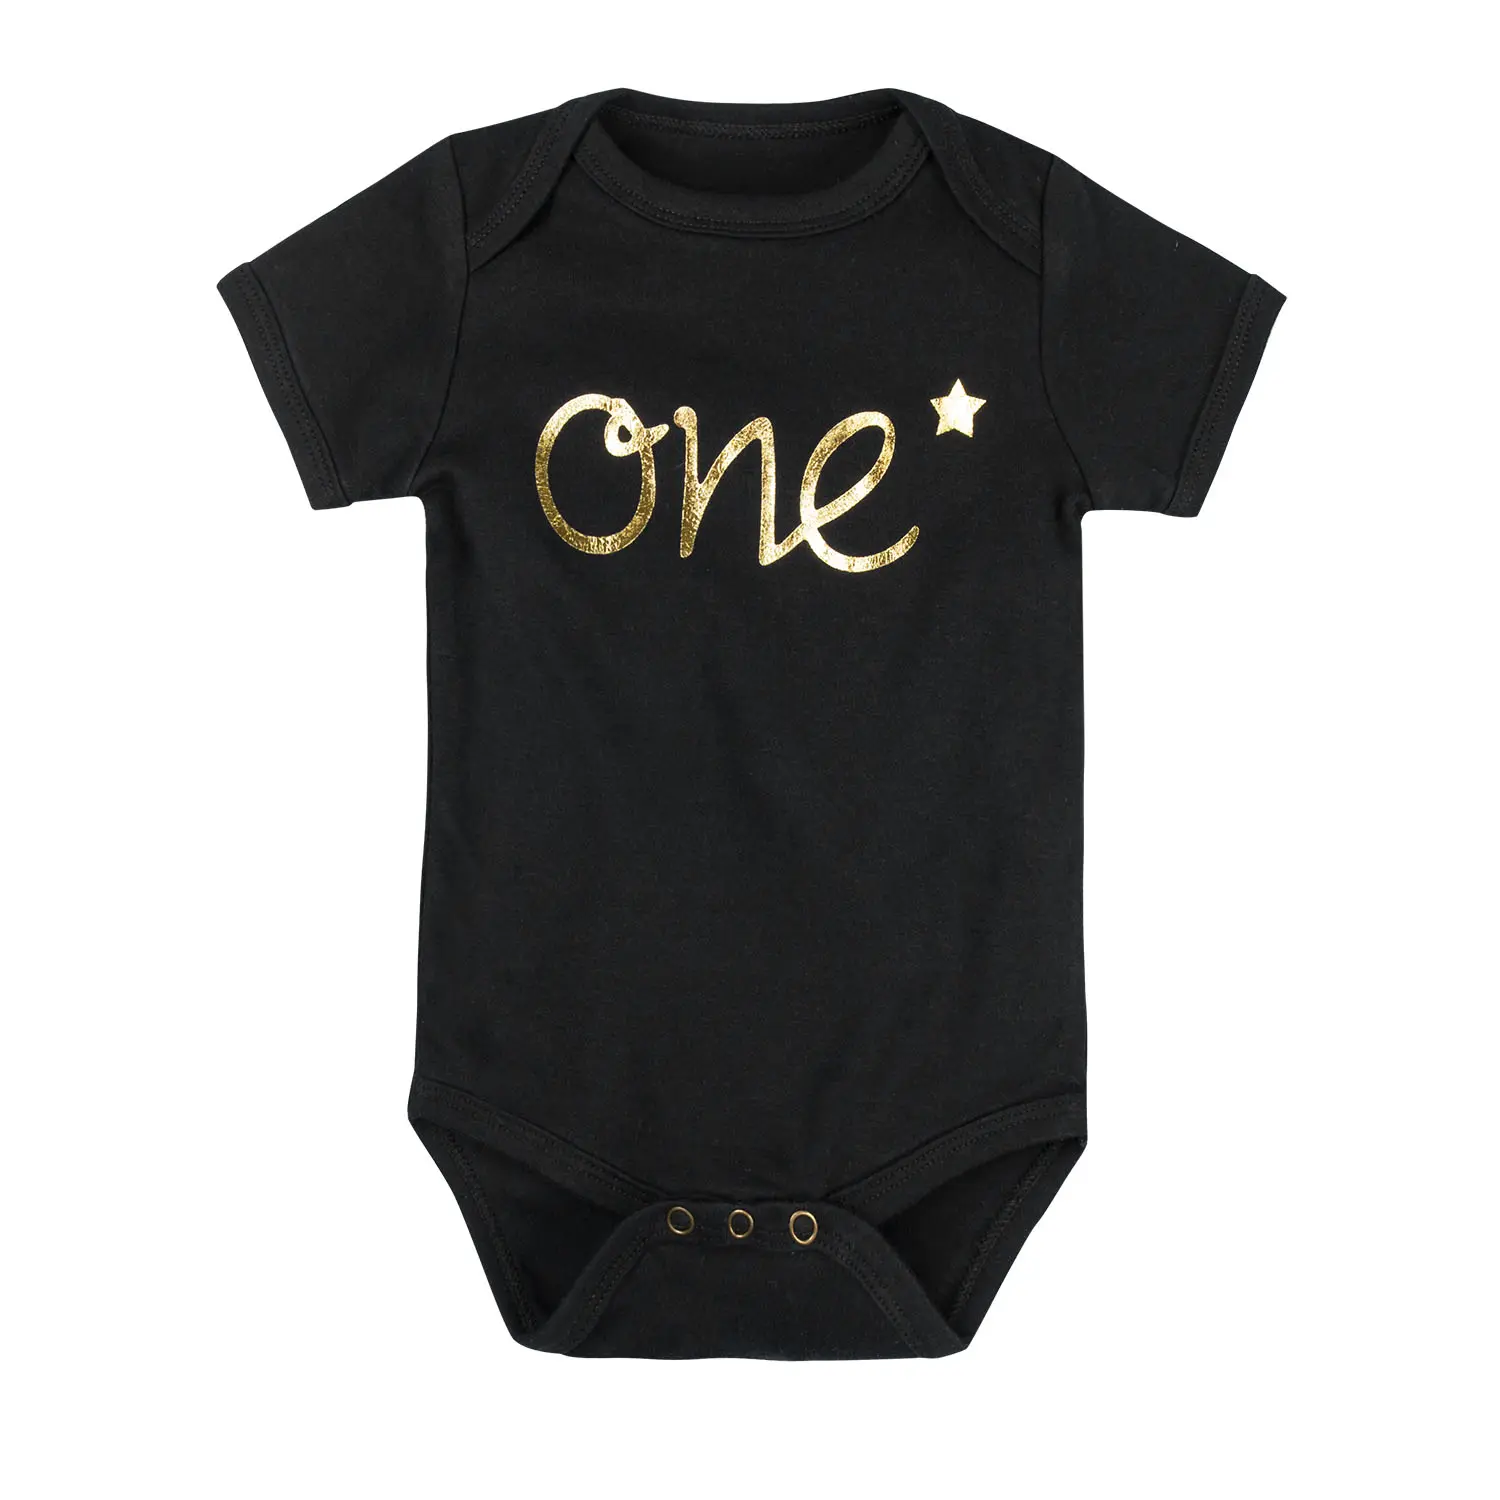 NÃO MOQ impressão Da Tela de alta qualidade bebê recém-nascido roupas bodysuit do bebê personalizado